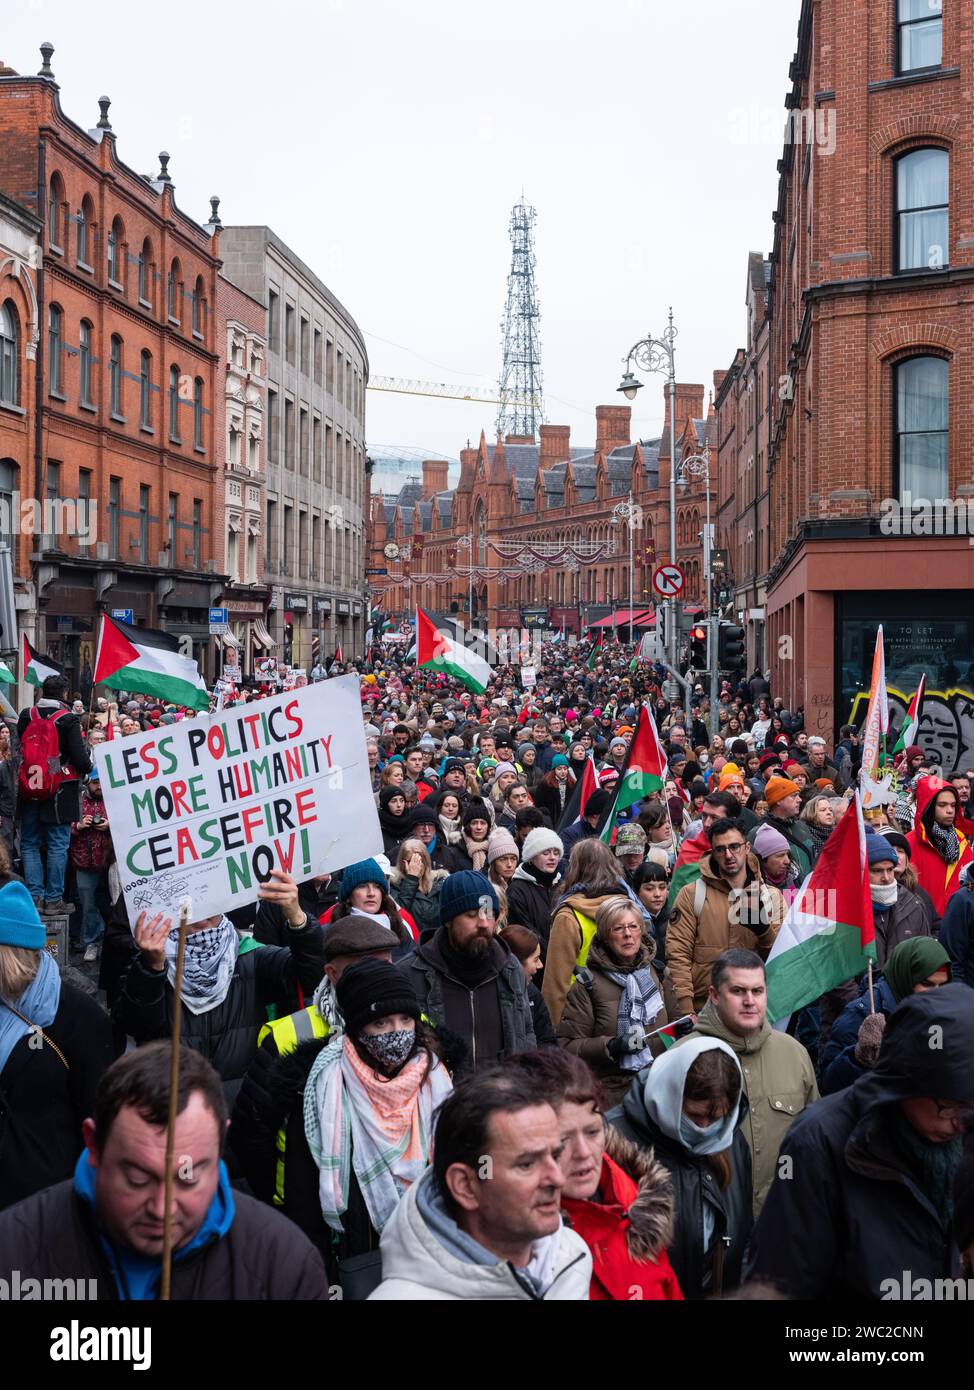 marcia di protesta per chiedere un cessate il fuoco nel conflitto israelo-palestinese, che si svolge nella città di Dublino, in Irlanda. Foto Stock